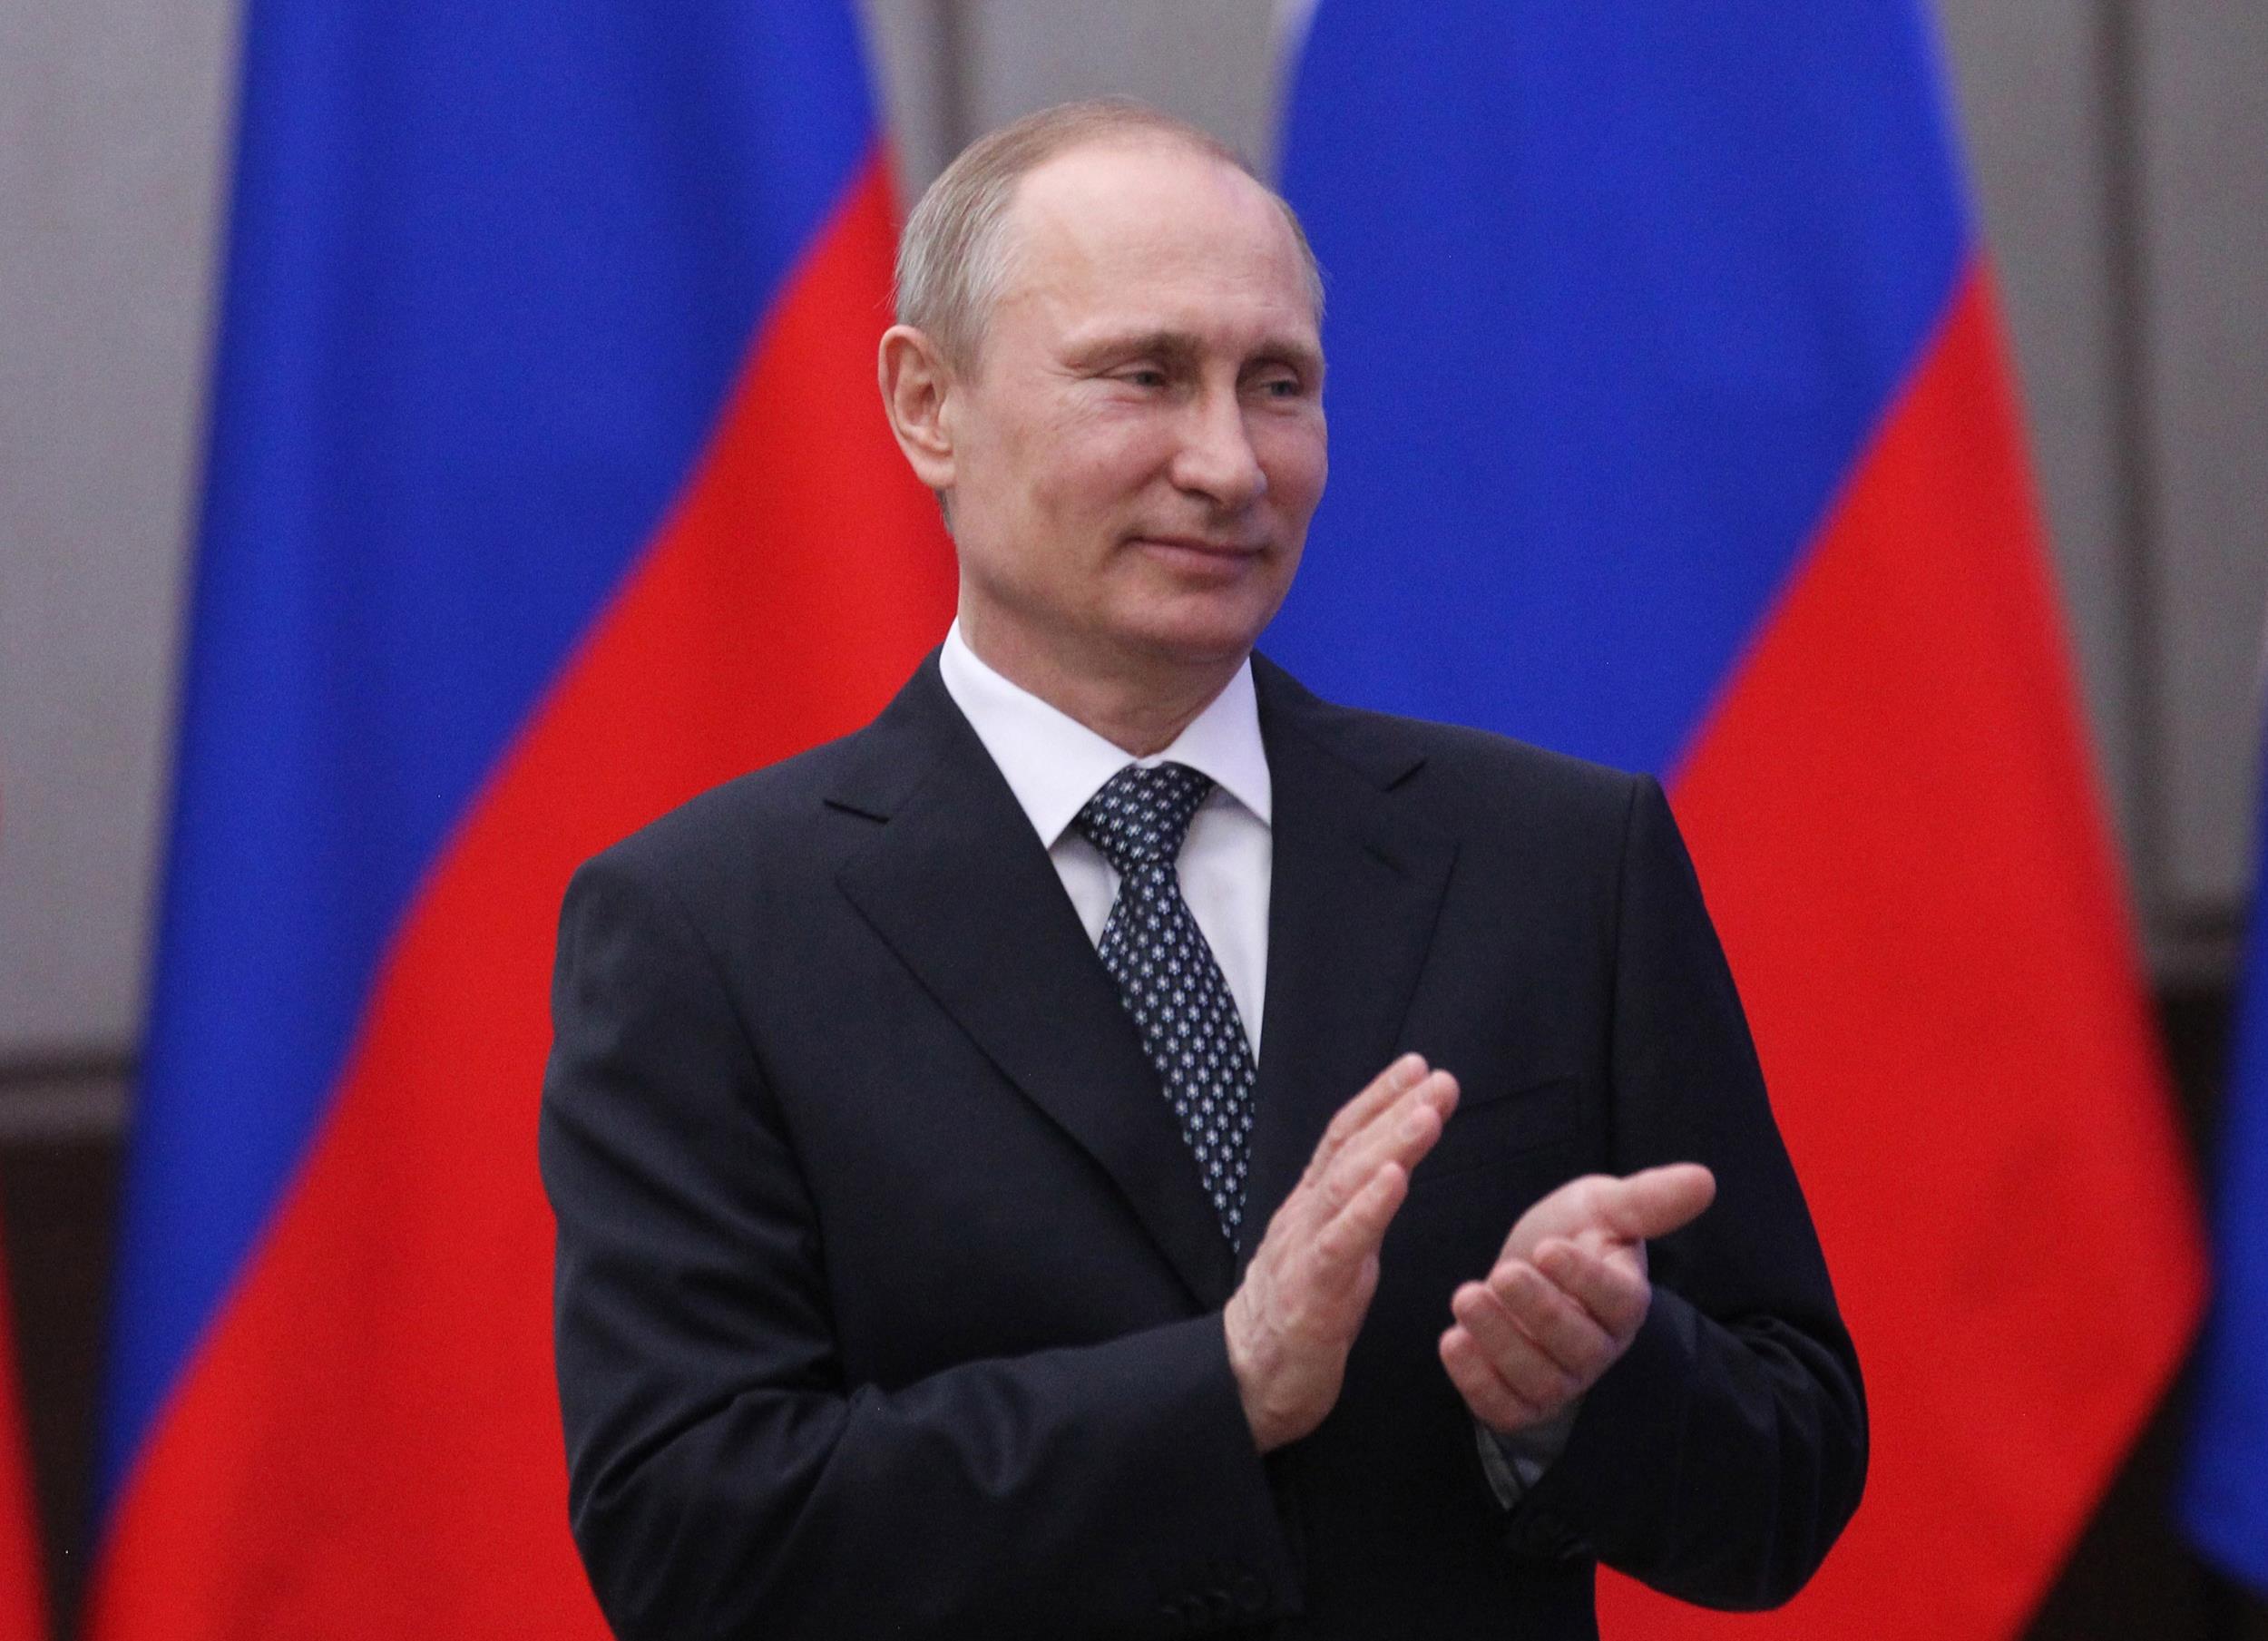  Anuncia Putin que no expulsará a ningún diplomático de EU